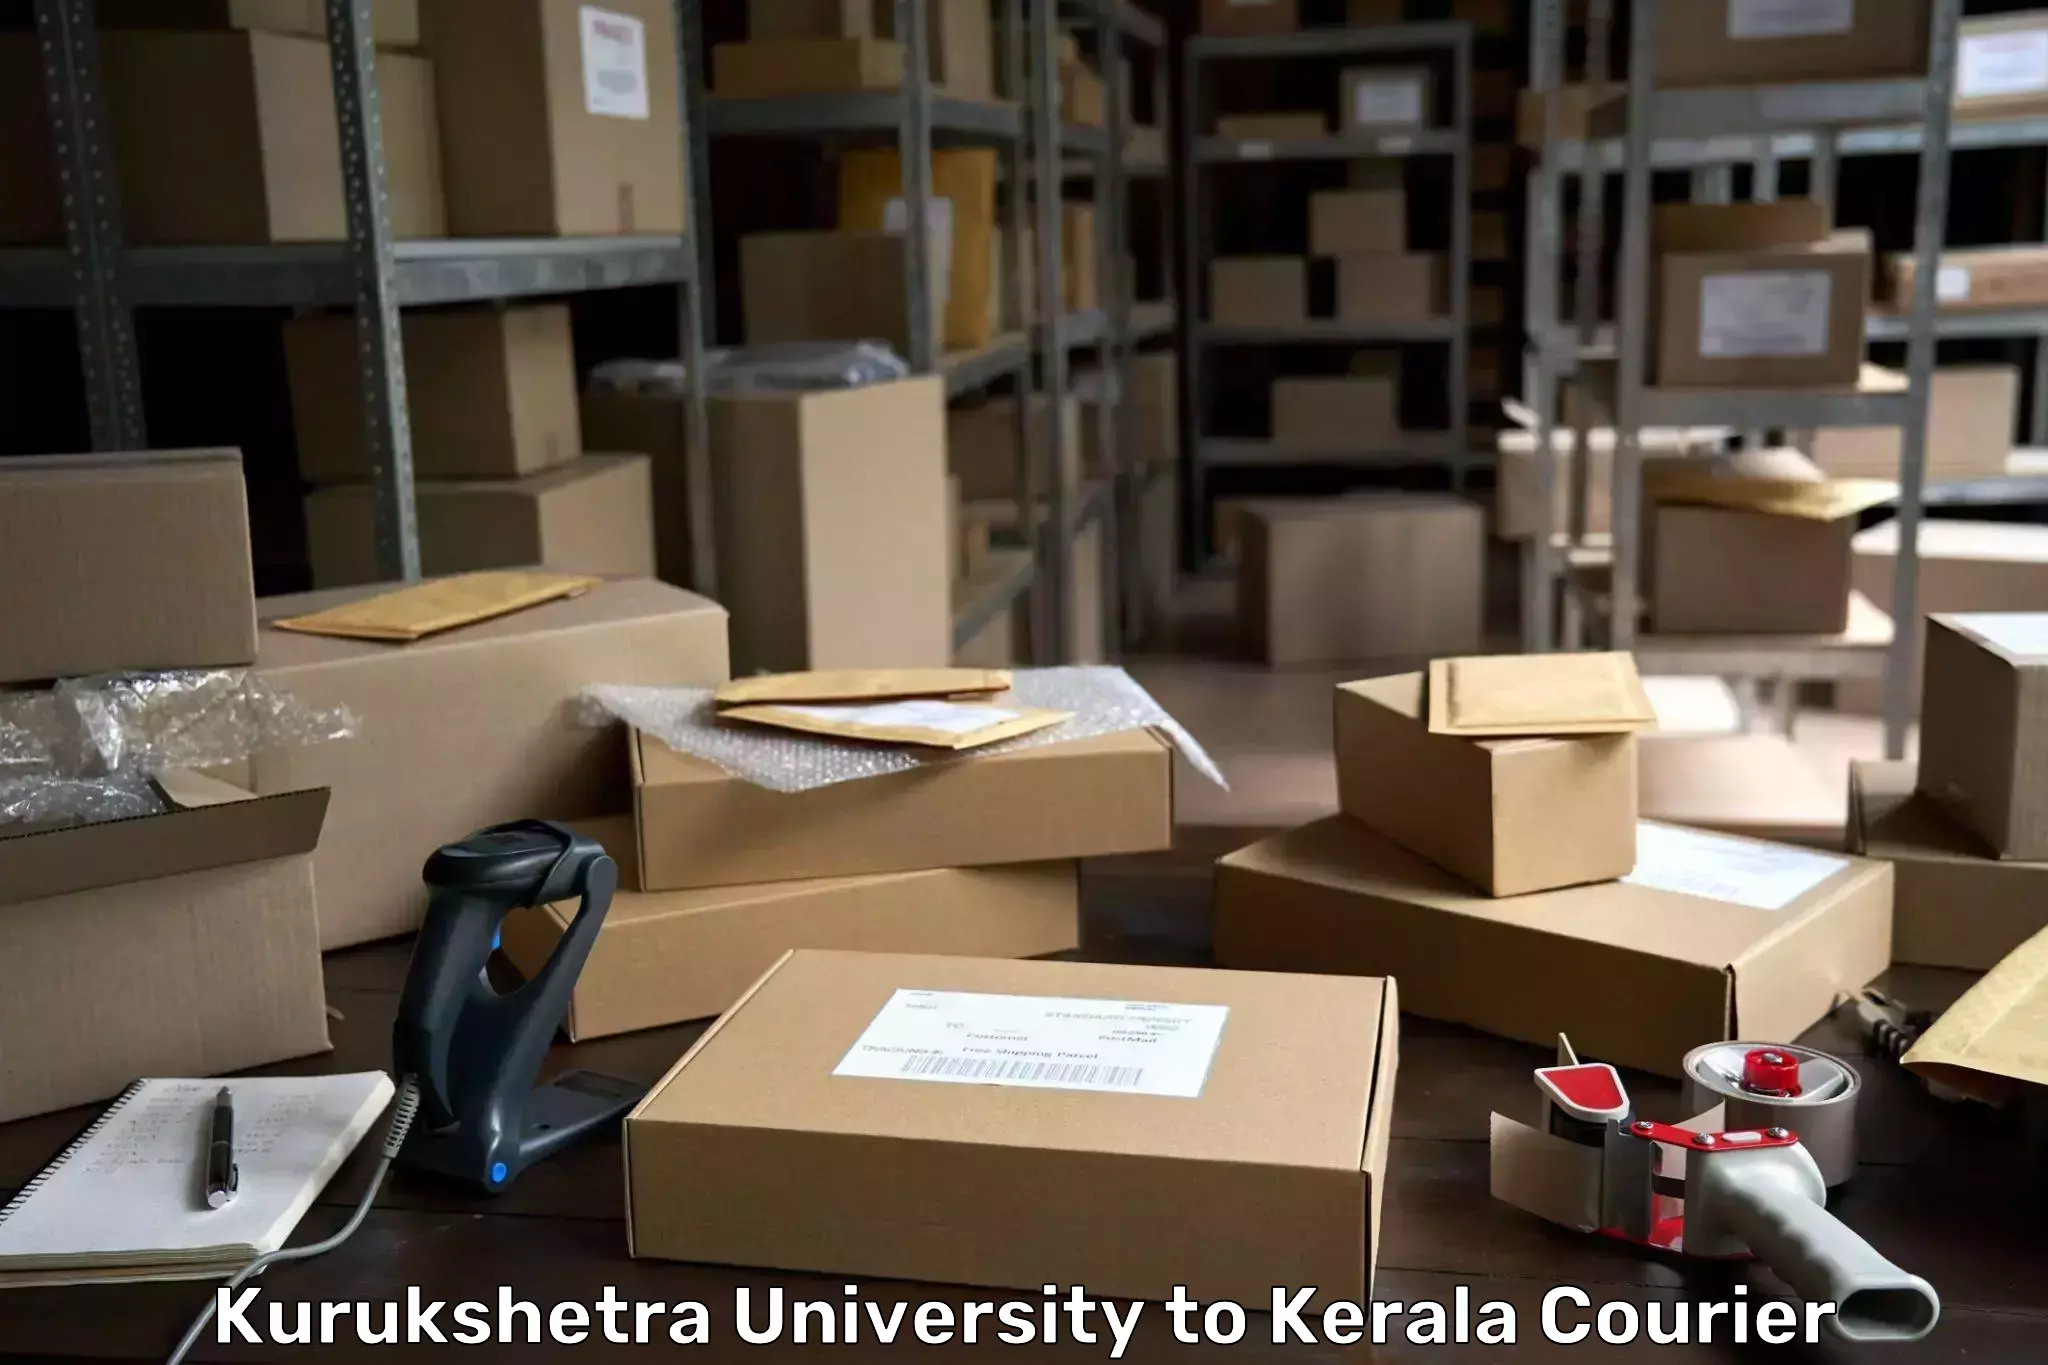 Custom courier packaging in Kurukshetra University to Kozhikode